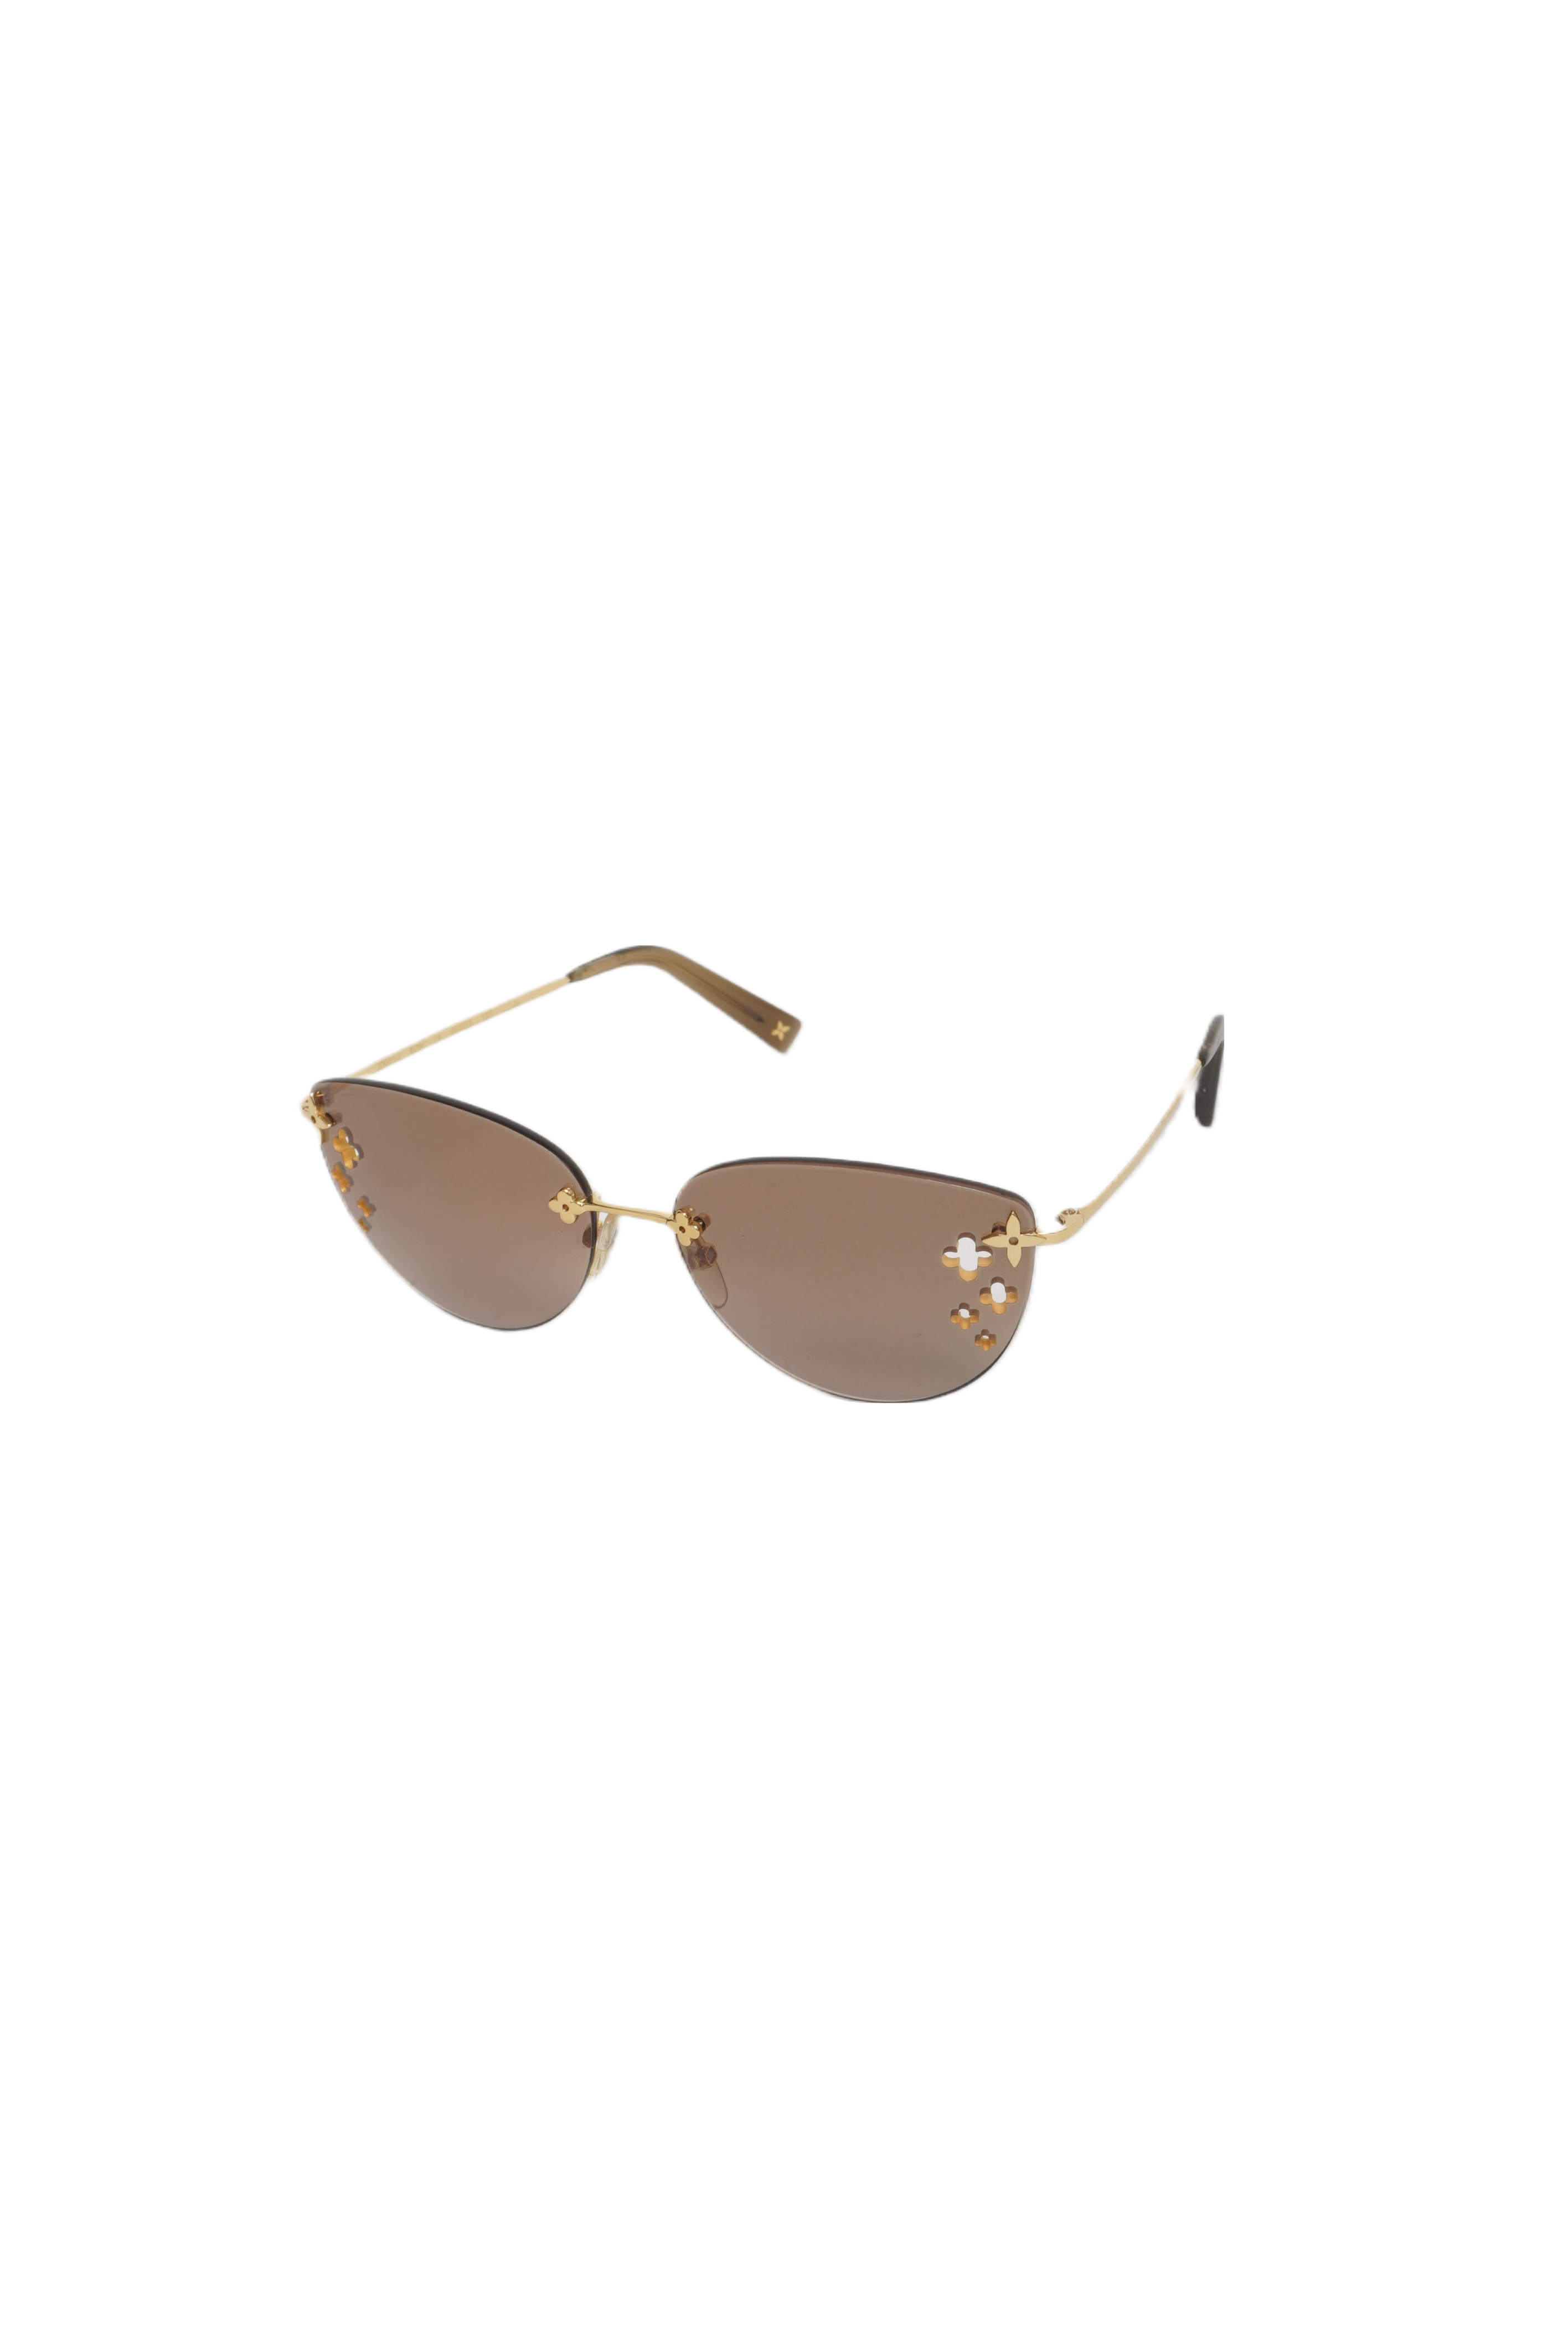 Louis Vuitton sunglasses desmayo cat eye monogram Eyewear